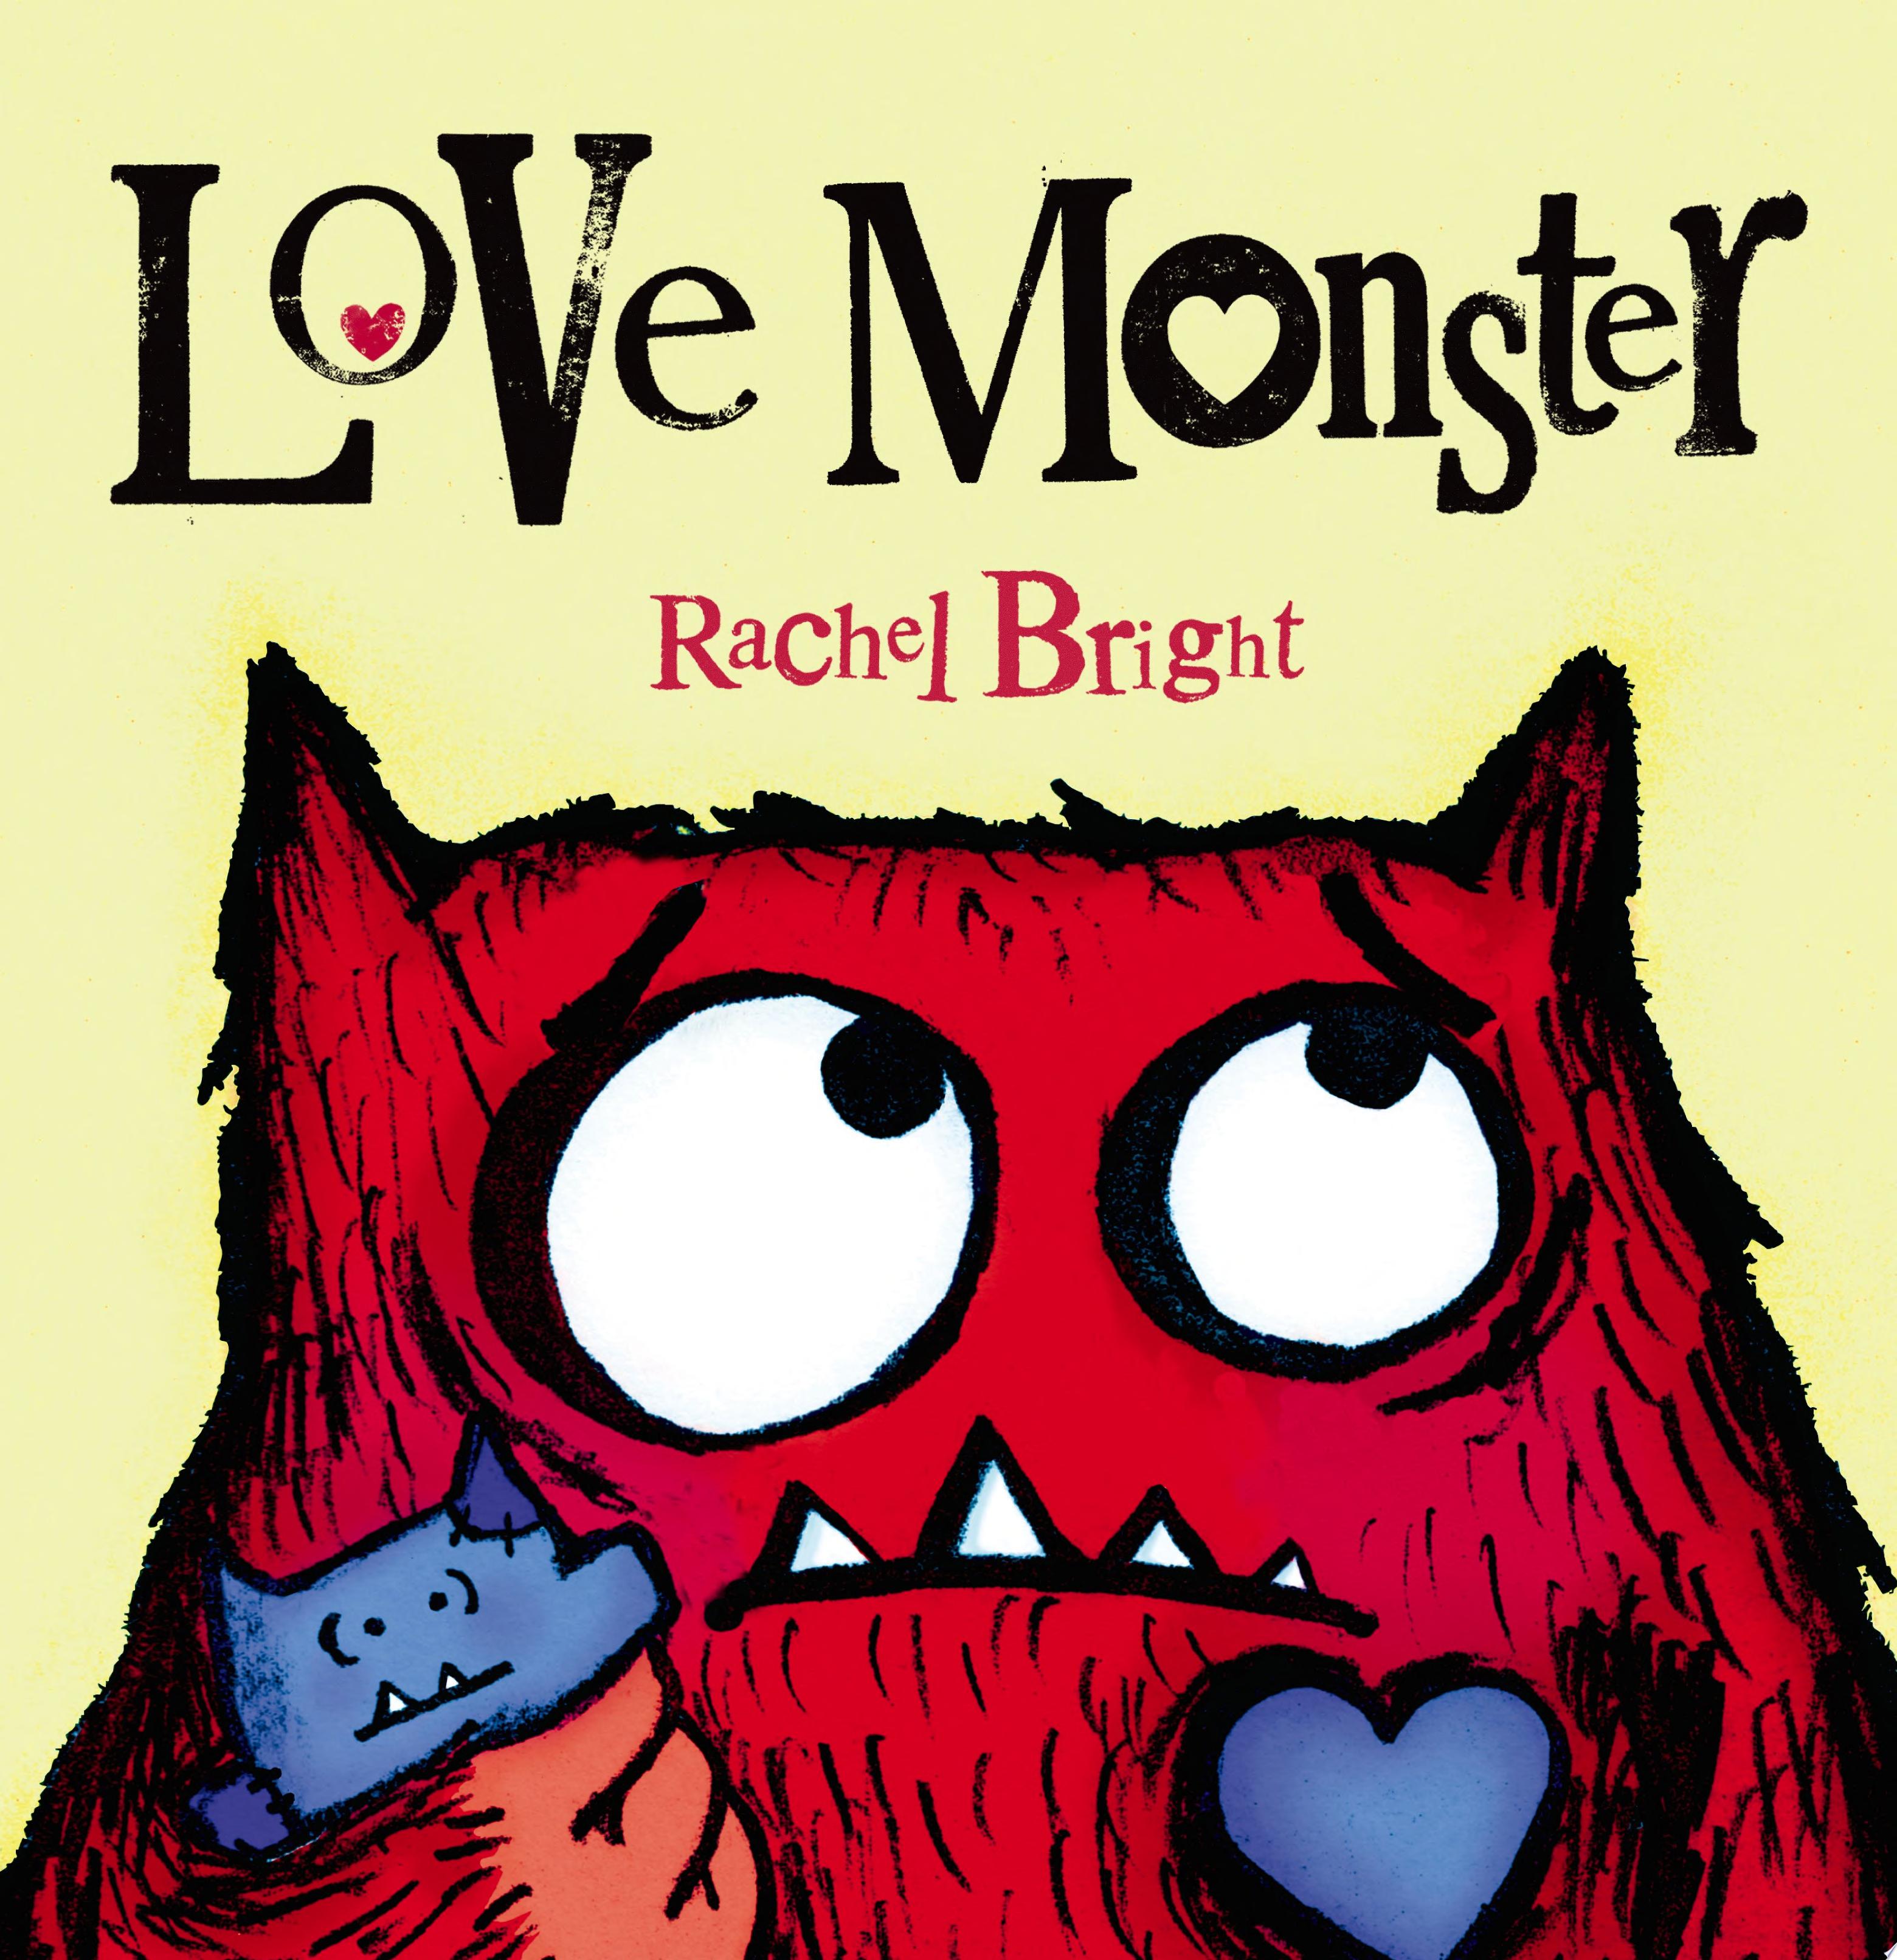 Image for "Love Monster"